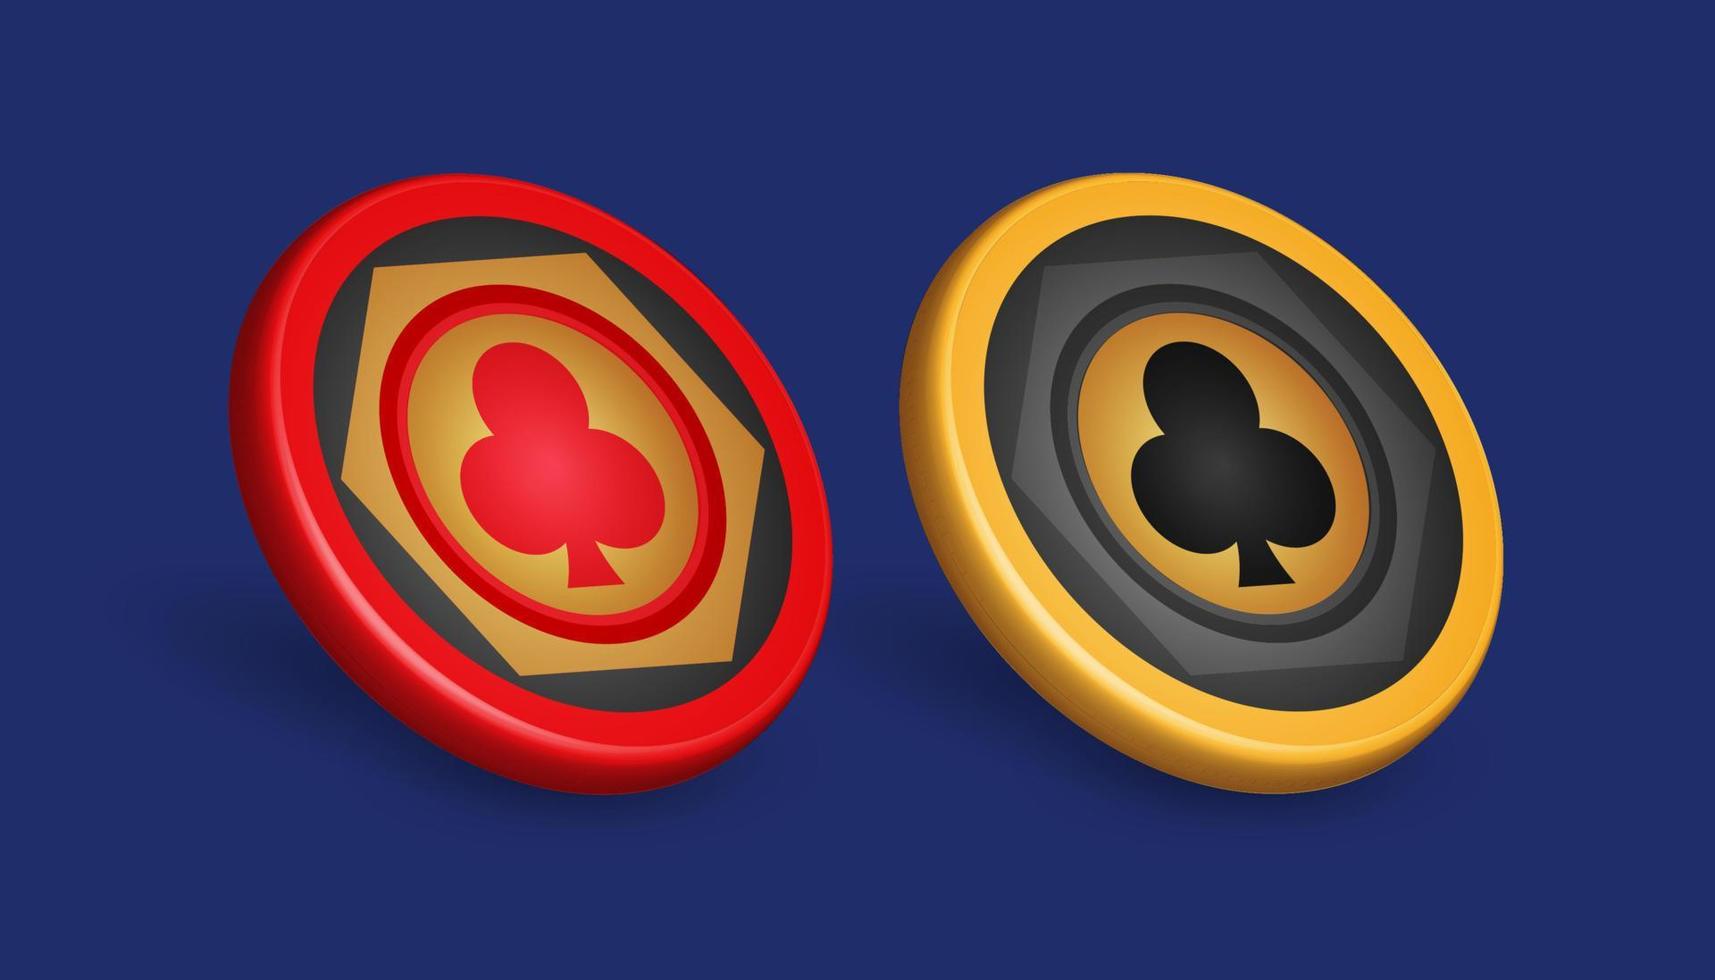 jeton de poker or et rouge, avec symbole de diamant, éléments de conception de jeu, illustration vectorielle 3d vecteur